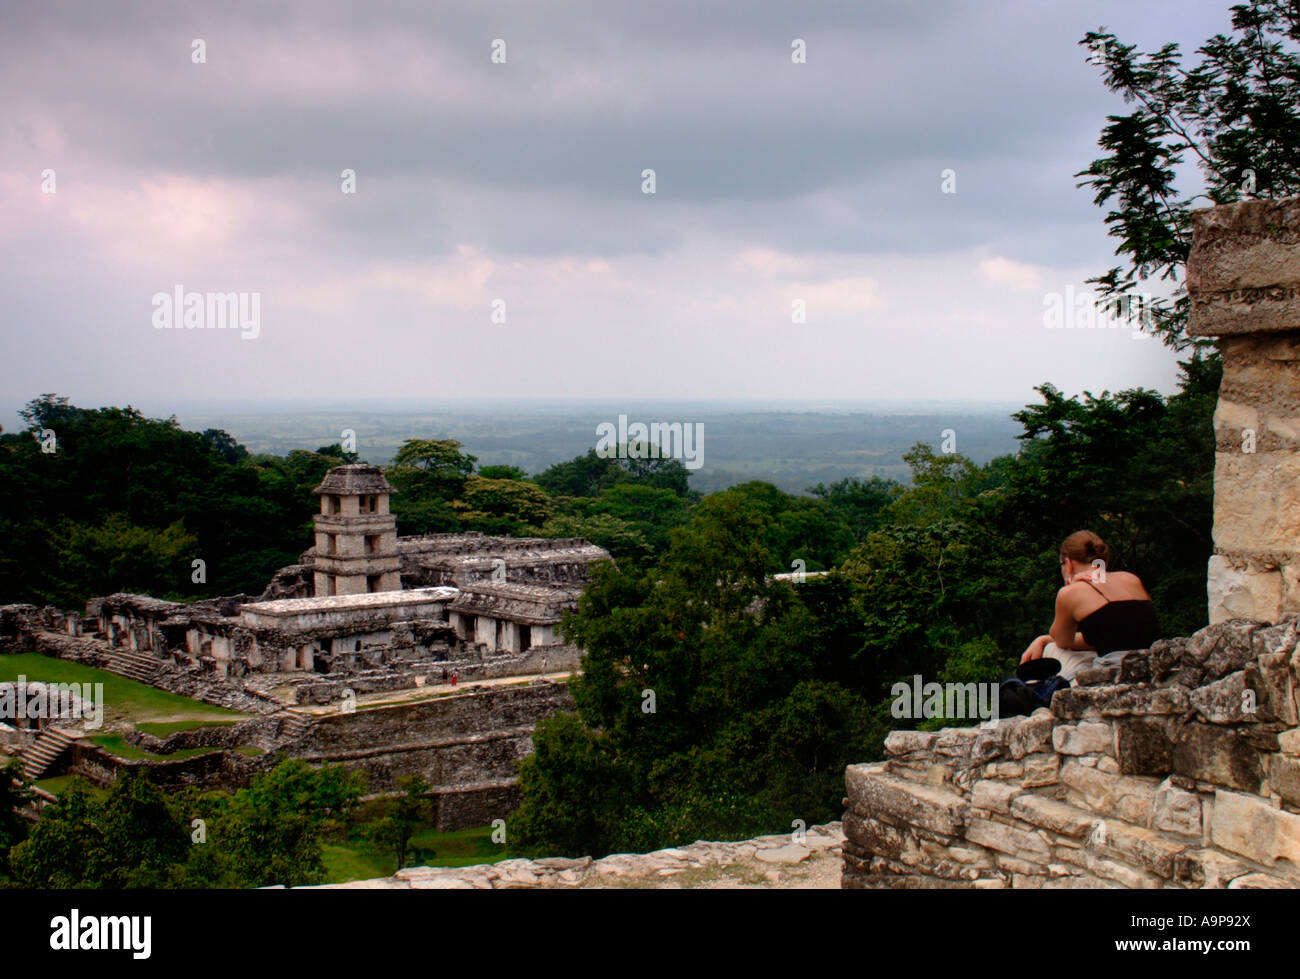 Touristen sieht Palastes in Palenque eine Maya-archäologische Ruinsite in Chiapas, Mexiko Stockfoto